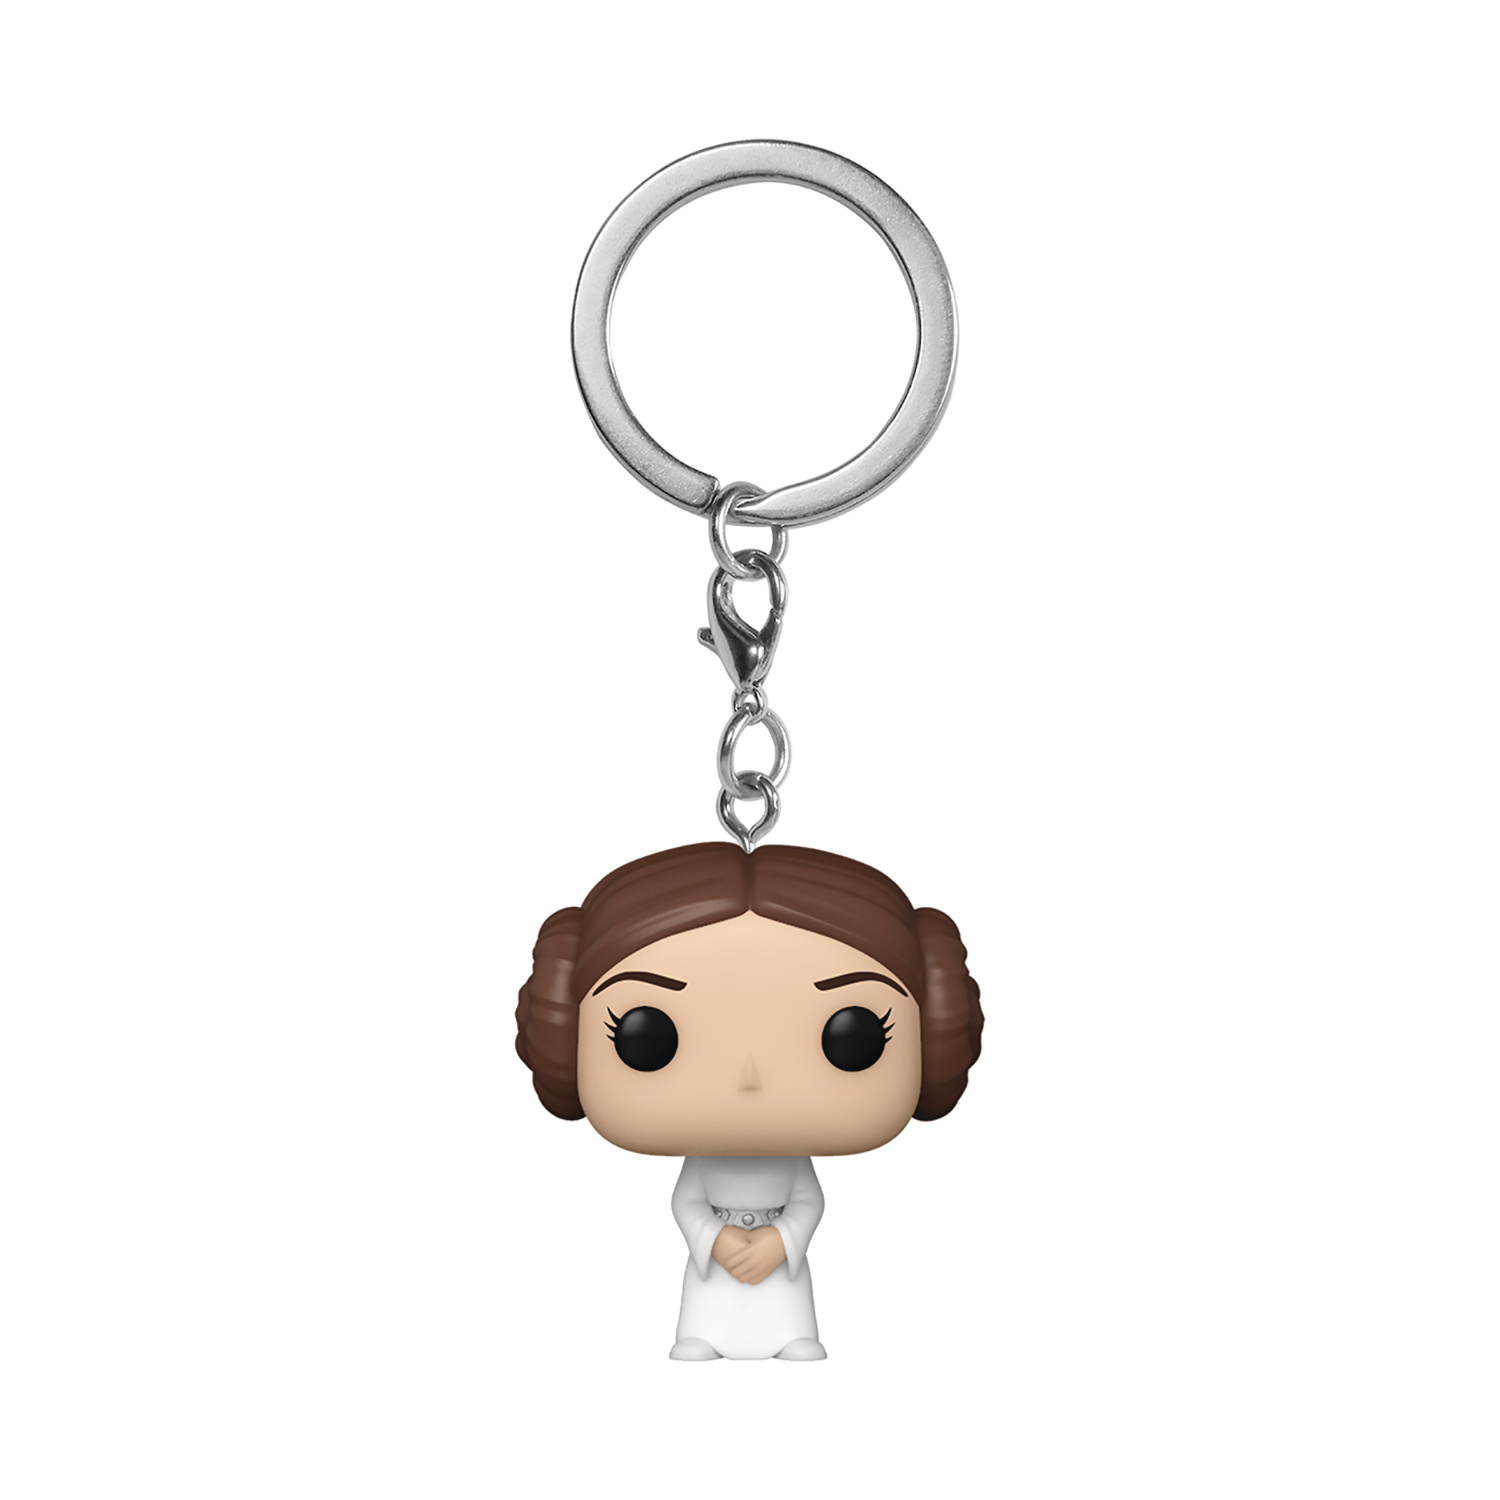 Pocket Pop Star Wars Princess Leia Keychain